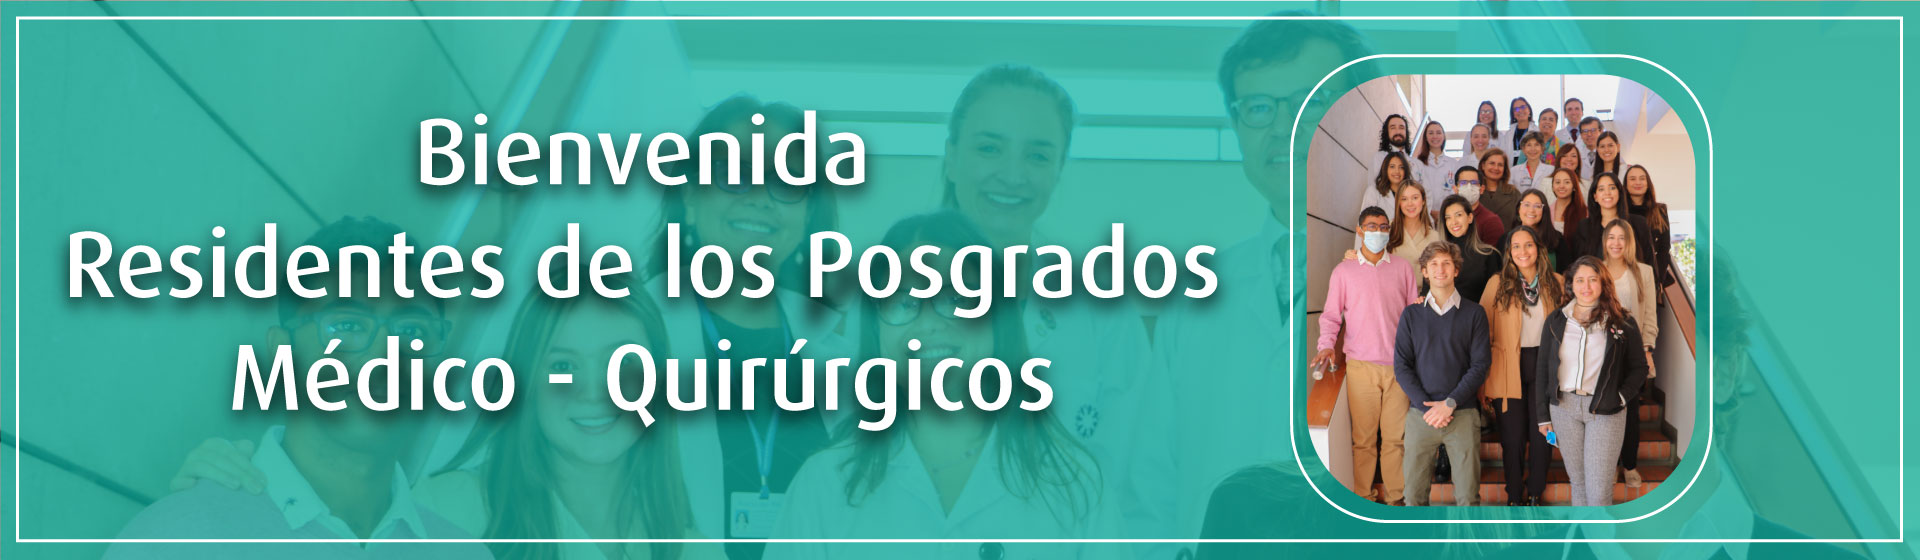  Bienvenida a los residentes de programas de posgrado médico-quirúrgicos: Pediatría, Psiquiatría y Patología.